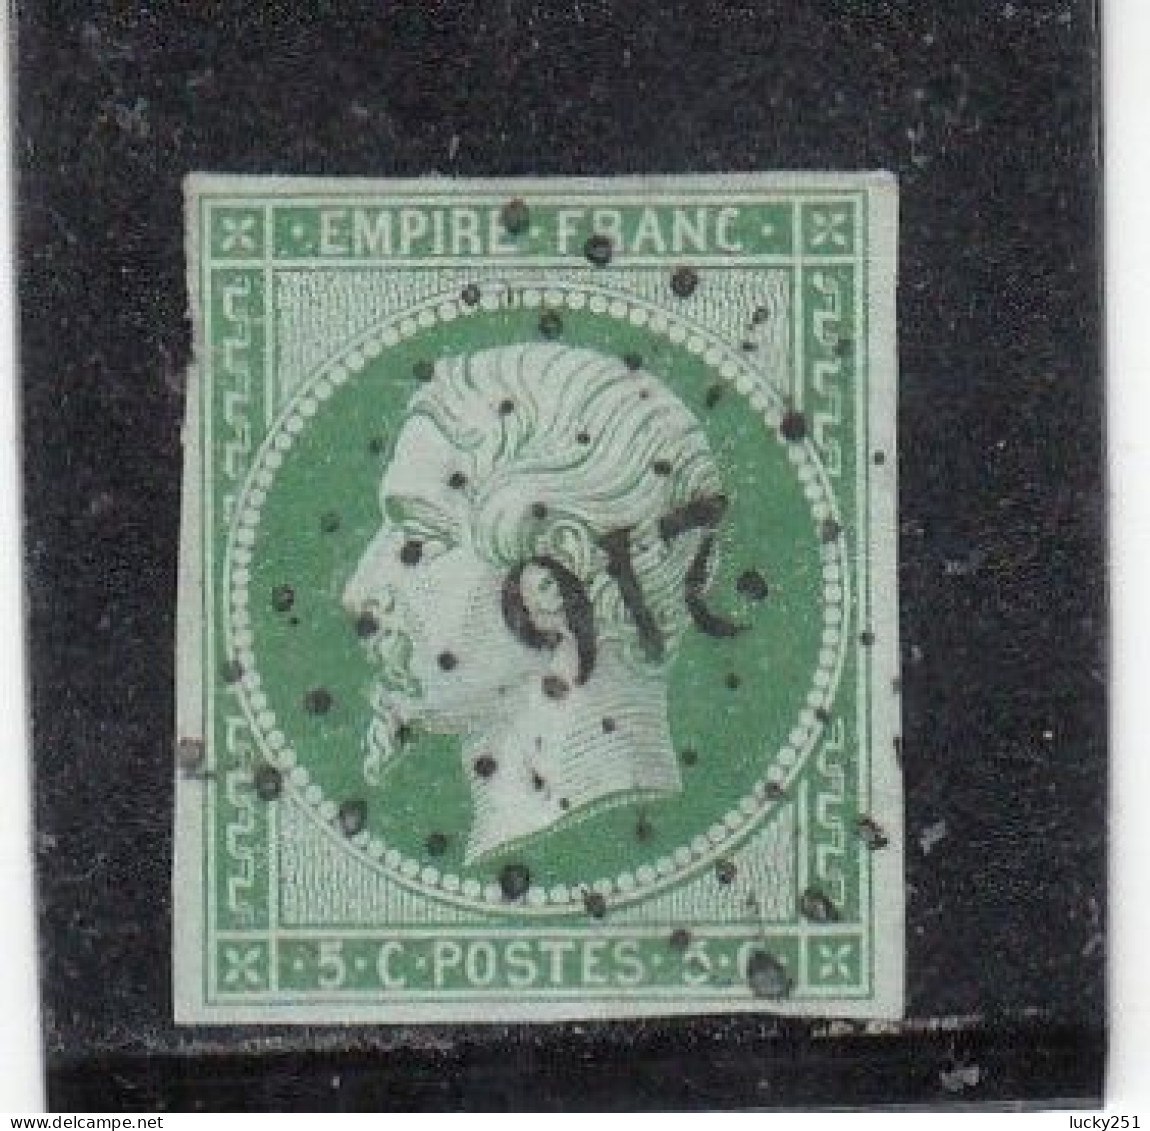 France - Année 1853/60 - N°YT 12  - Oblitéré PC - 5c Vert - 1853-1860 Napoleon III